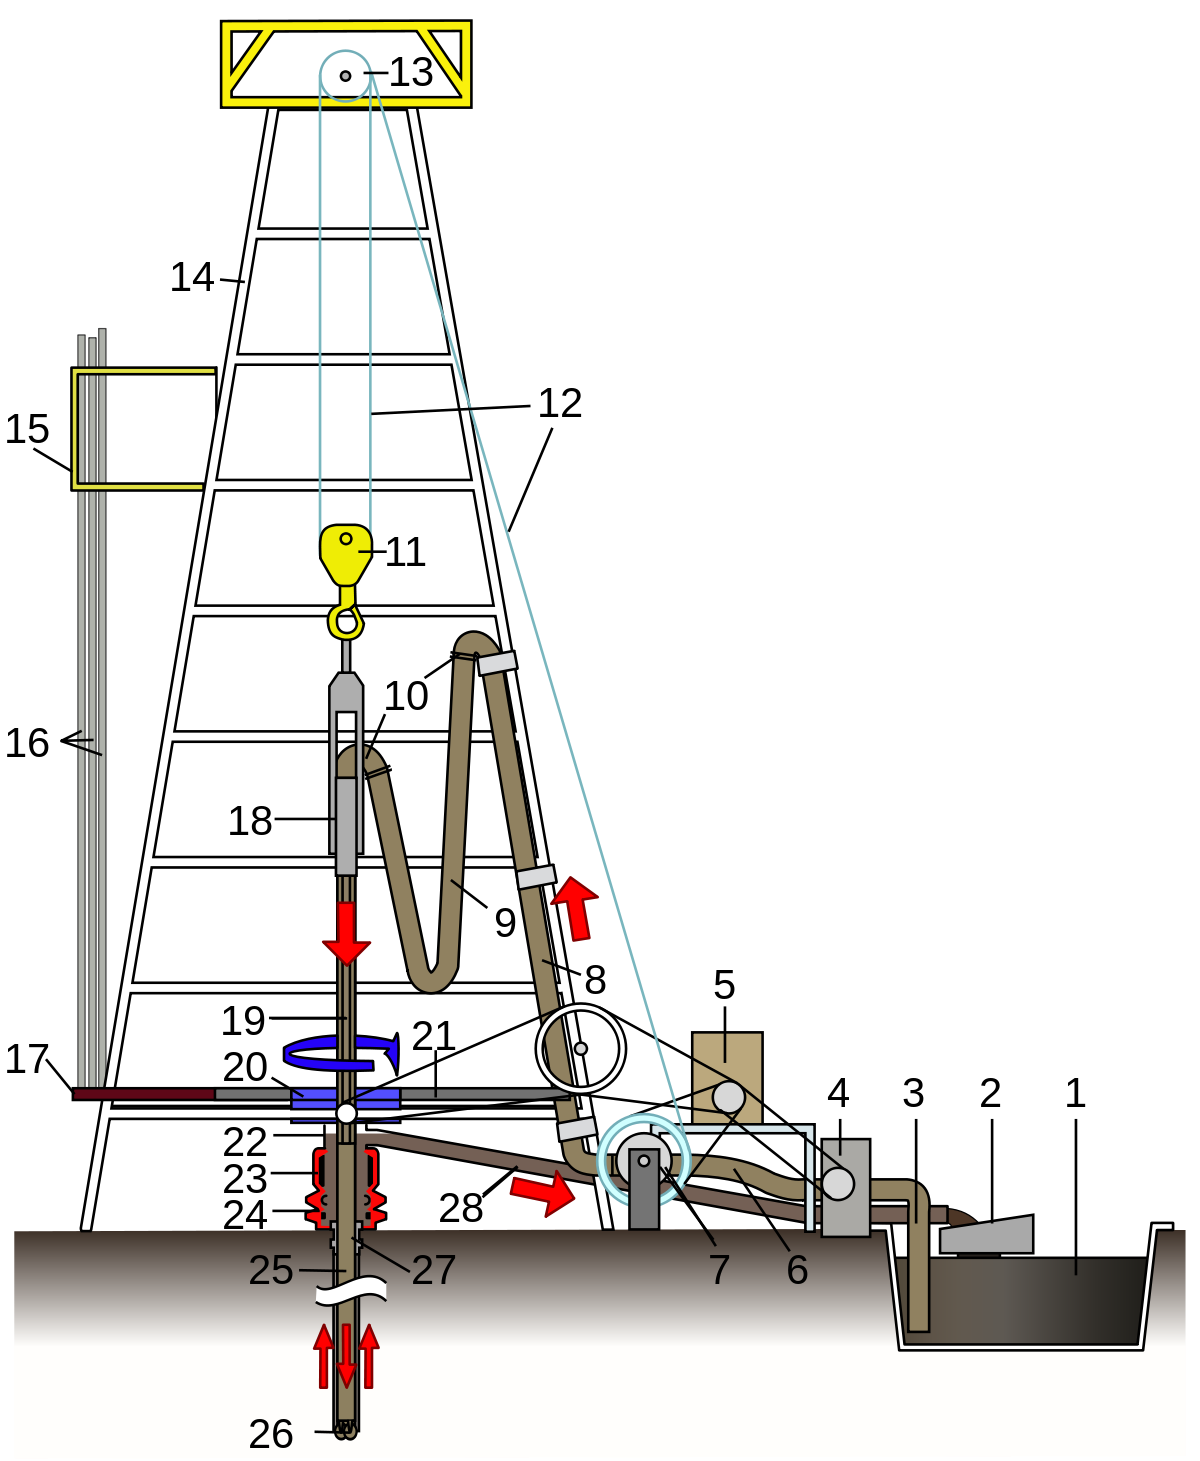 workover rig diagram